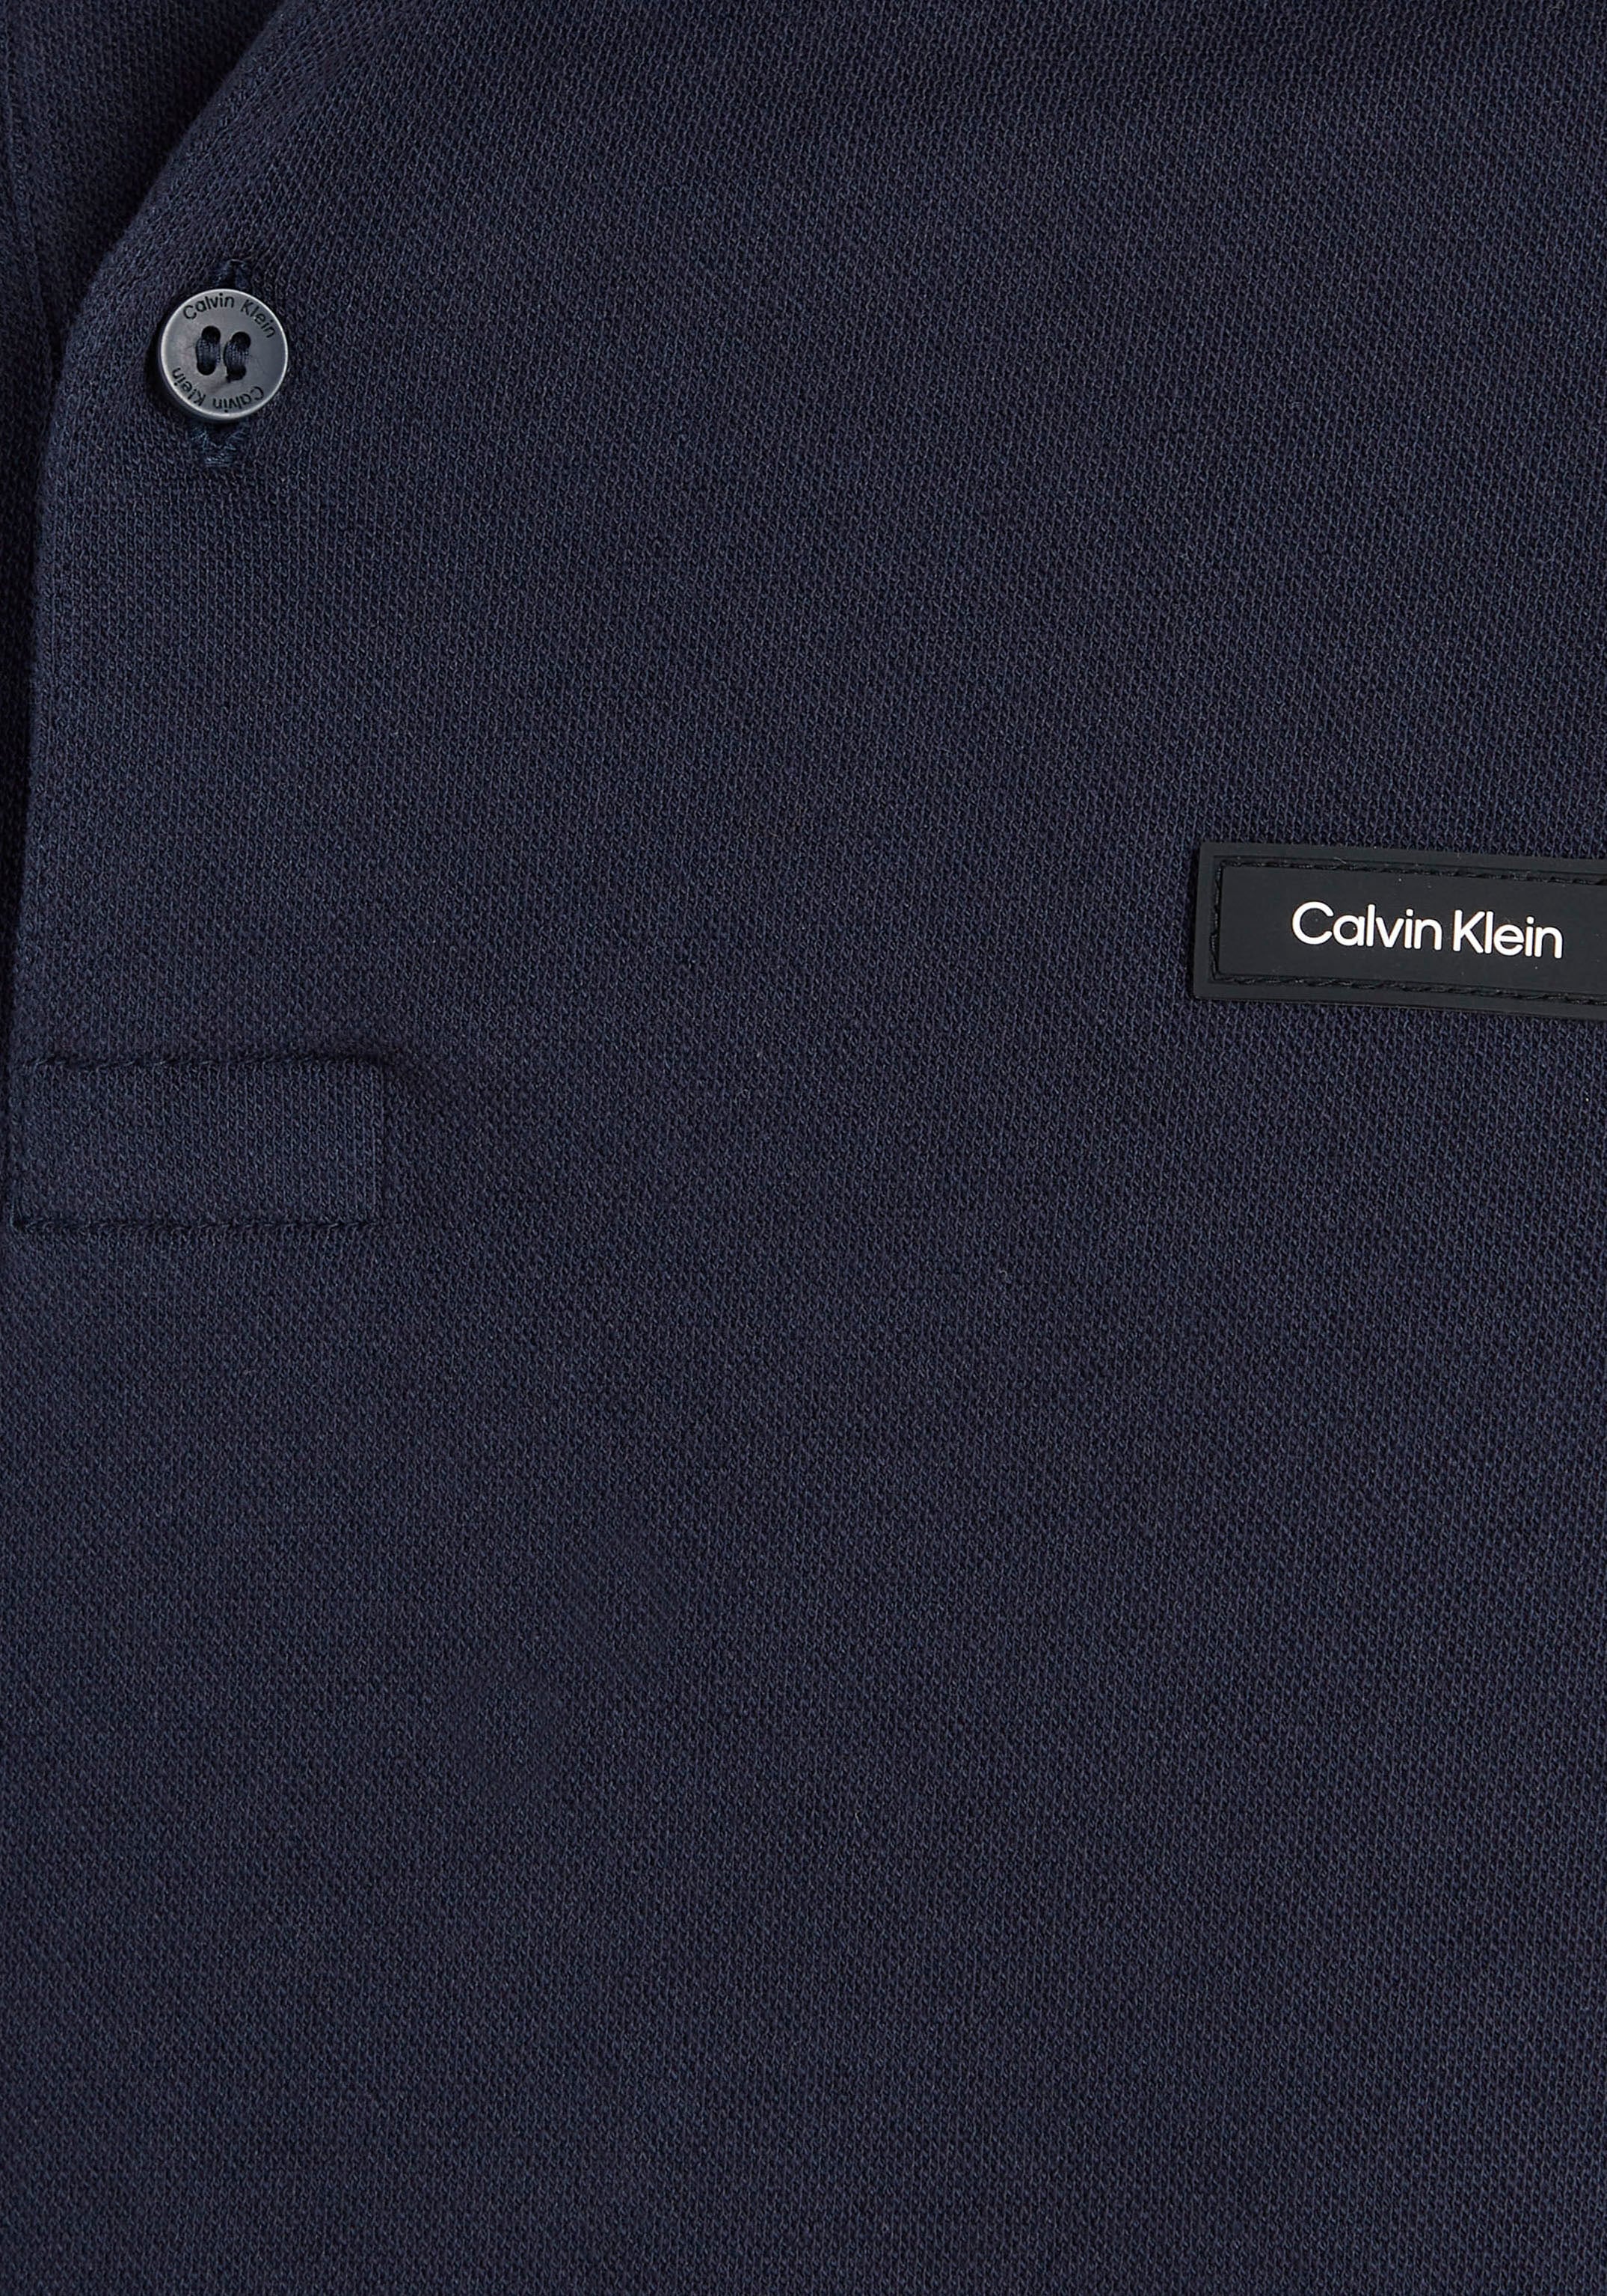 der Brust auf OTTO Klein Poloshirt, online mit Logo Calvin Calvin bei Klein kaufen